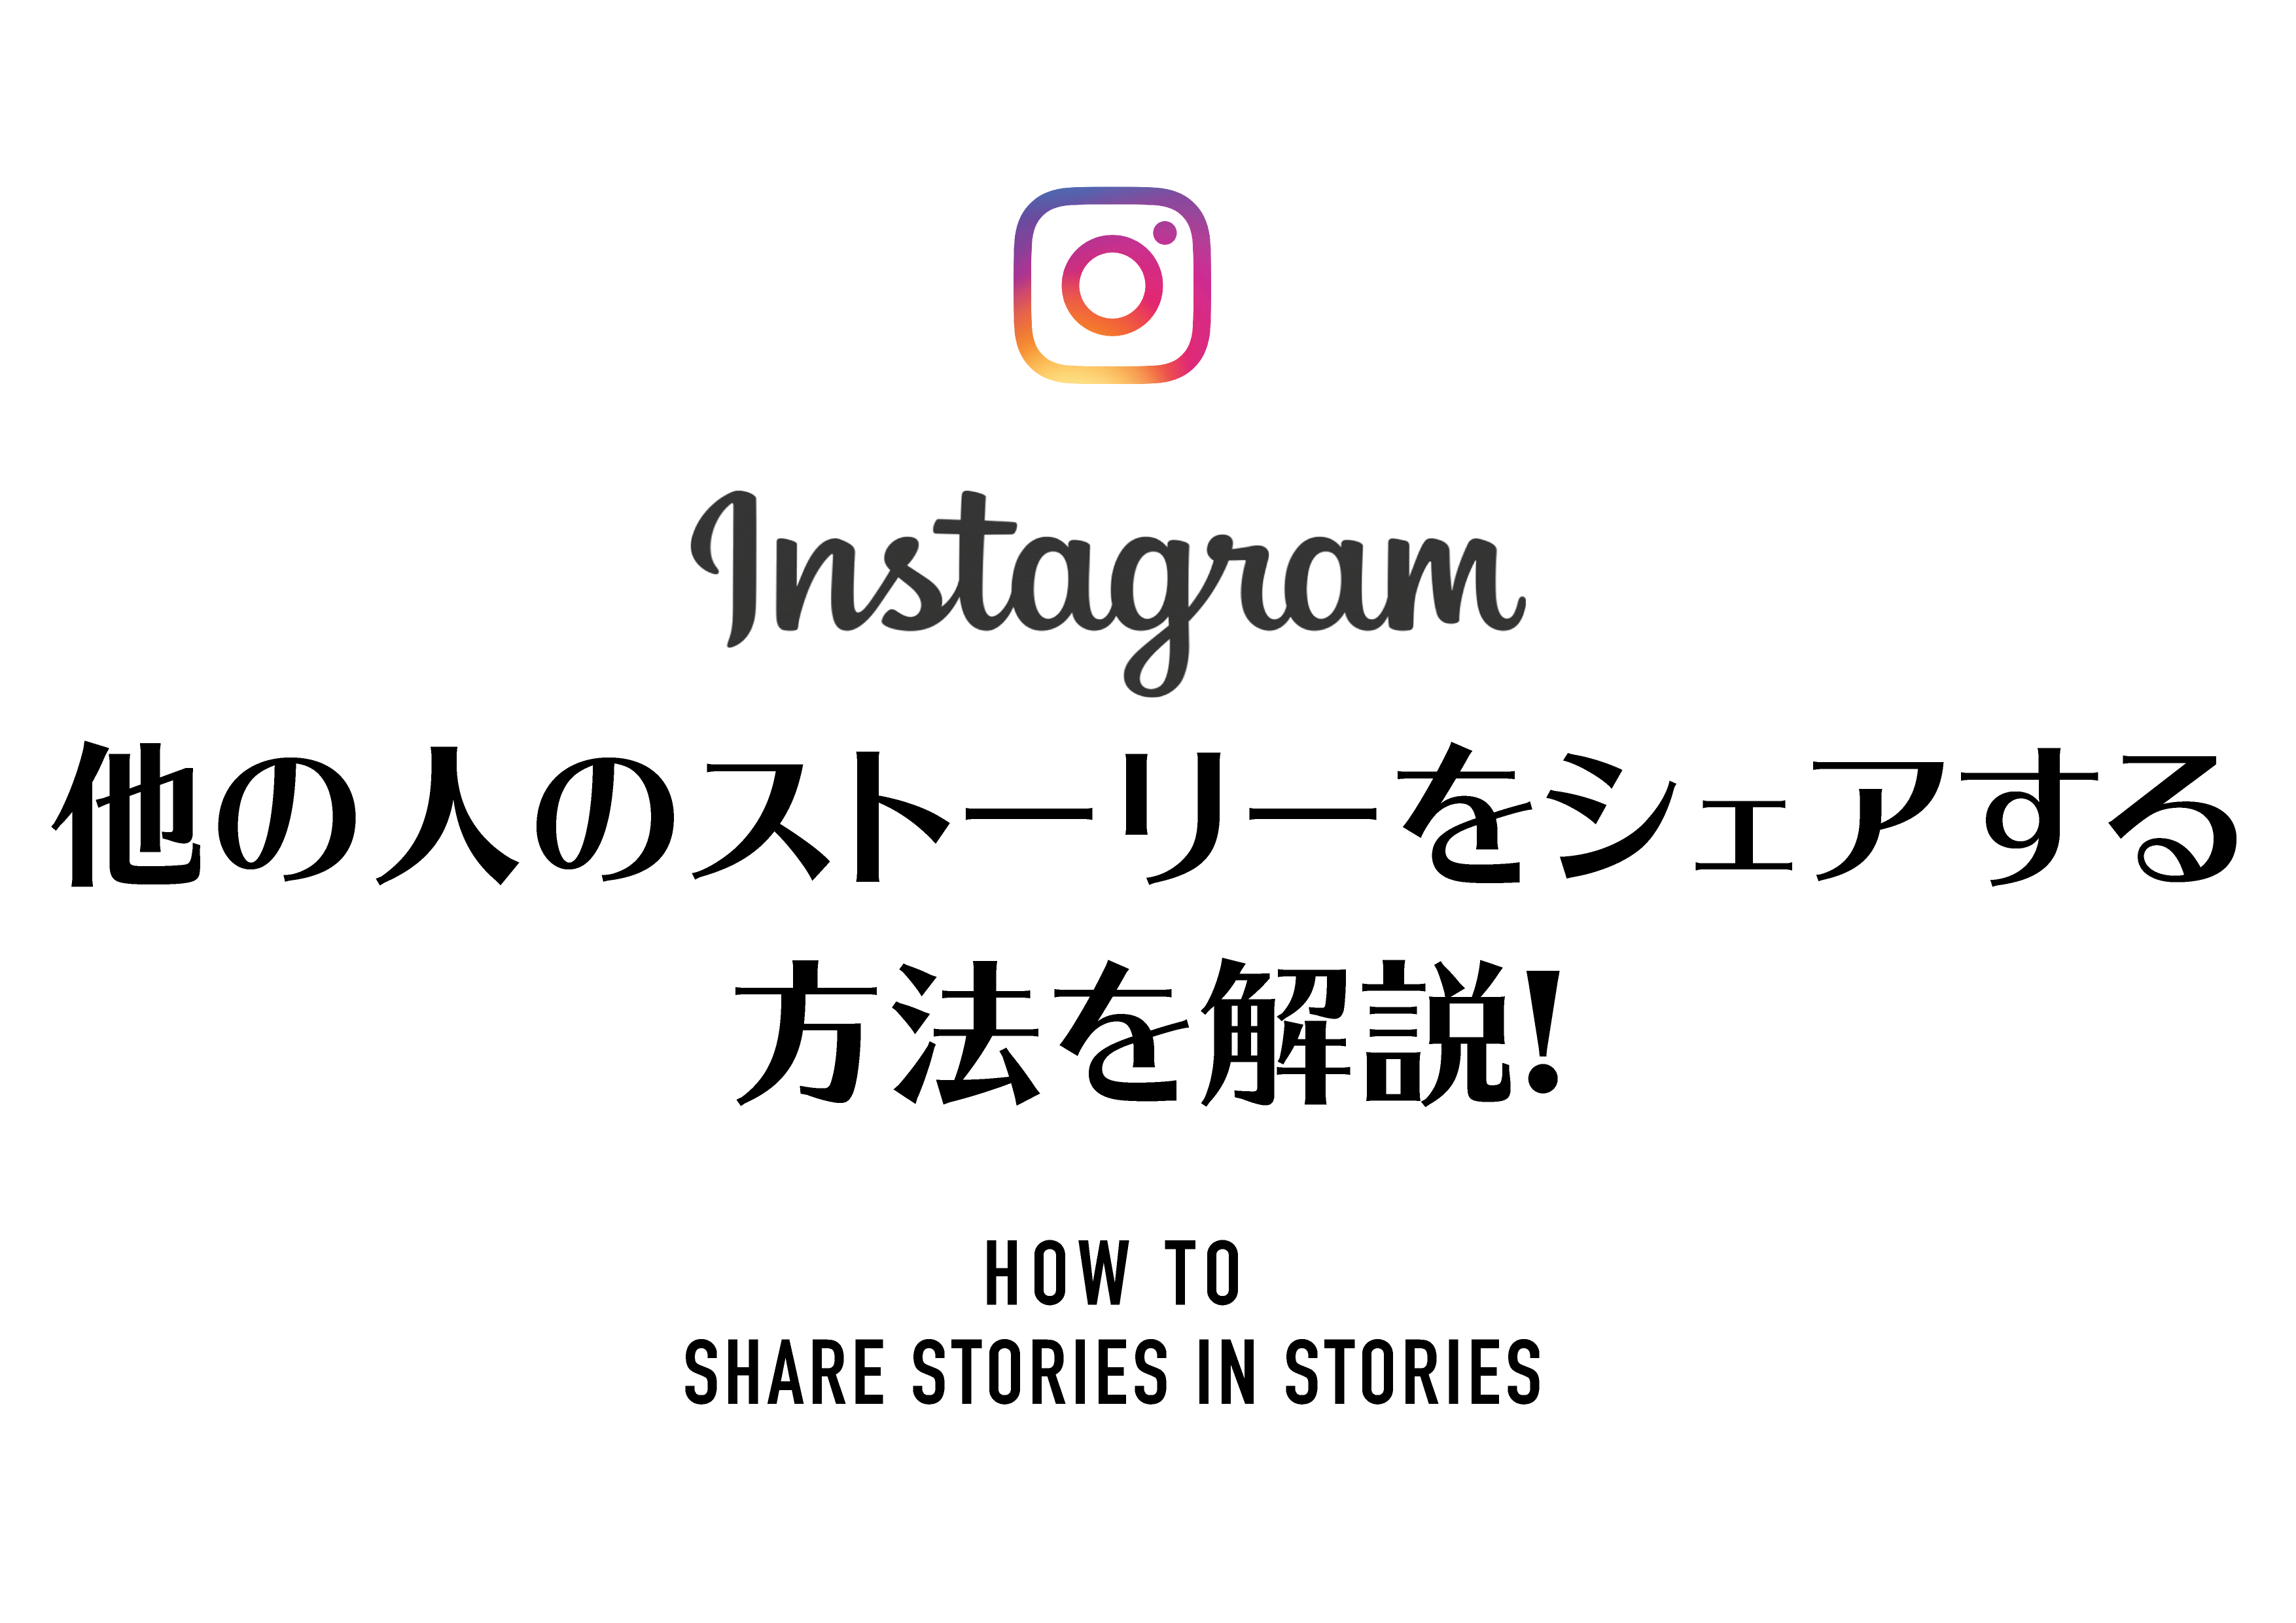 instagram shareStories 02